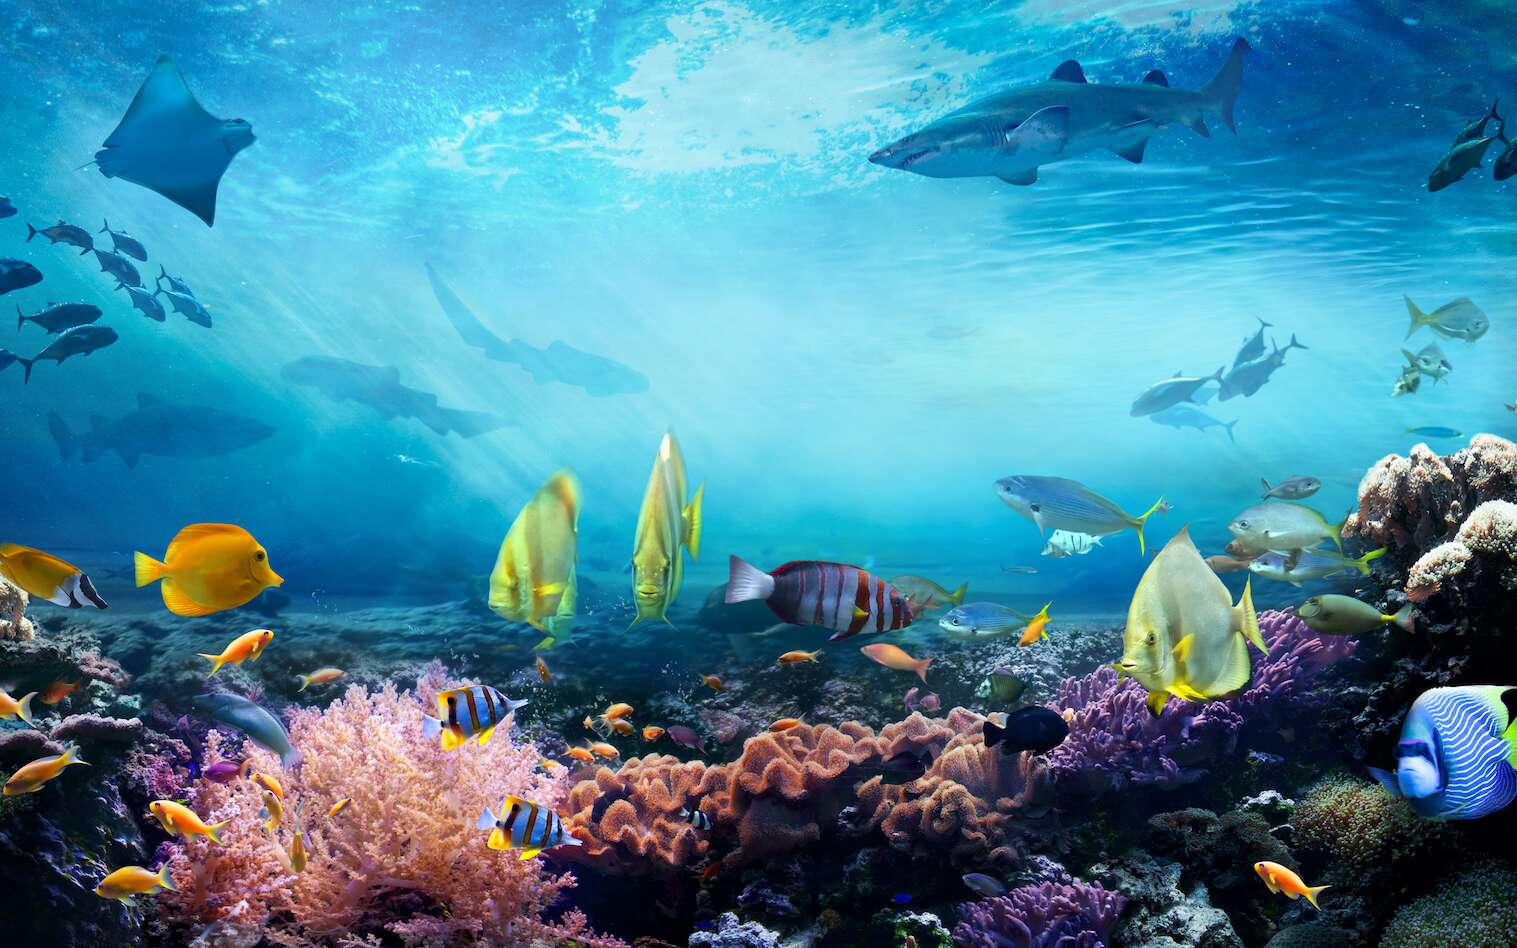 Les récifs coralliens fourmillent de vie. Mais le réchauffement climatique les met gravement en danger. © silvae, Adobe Stock